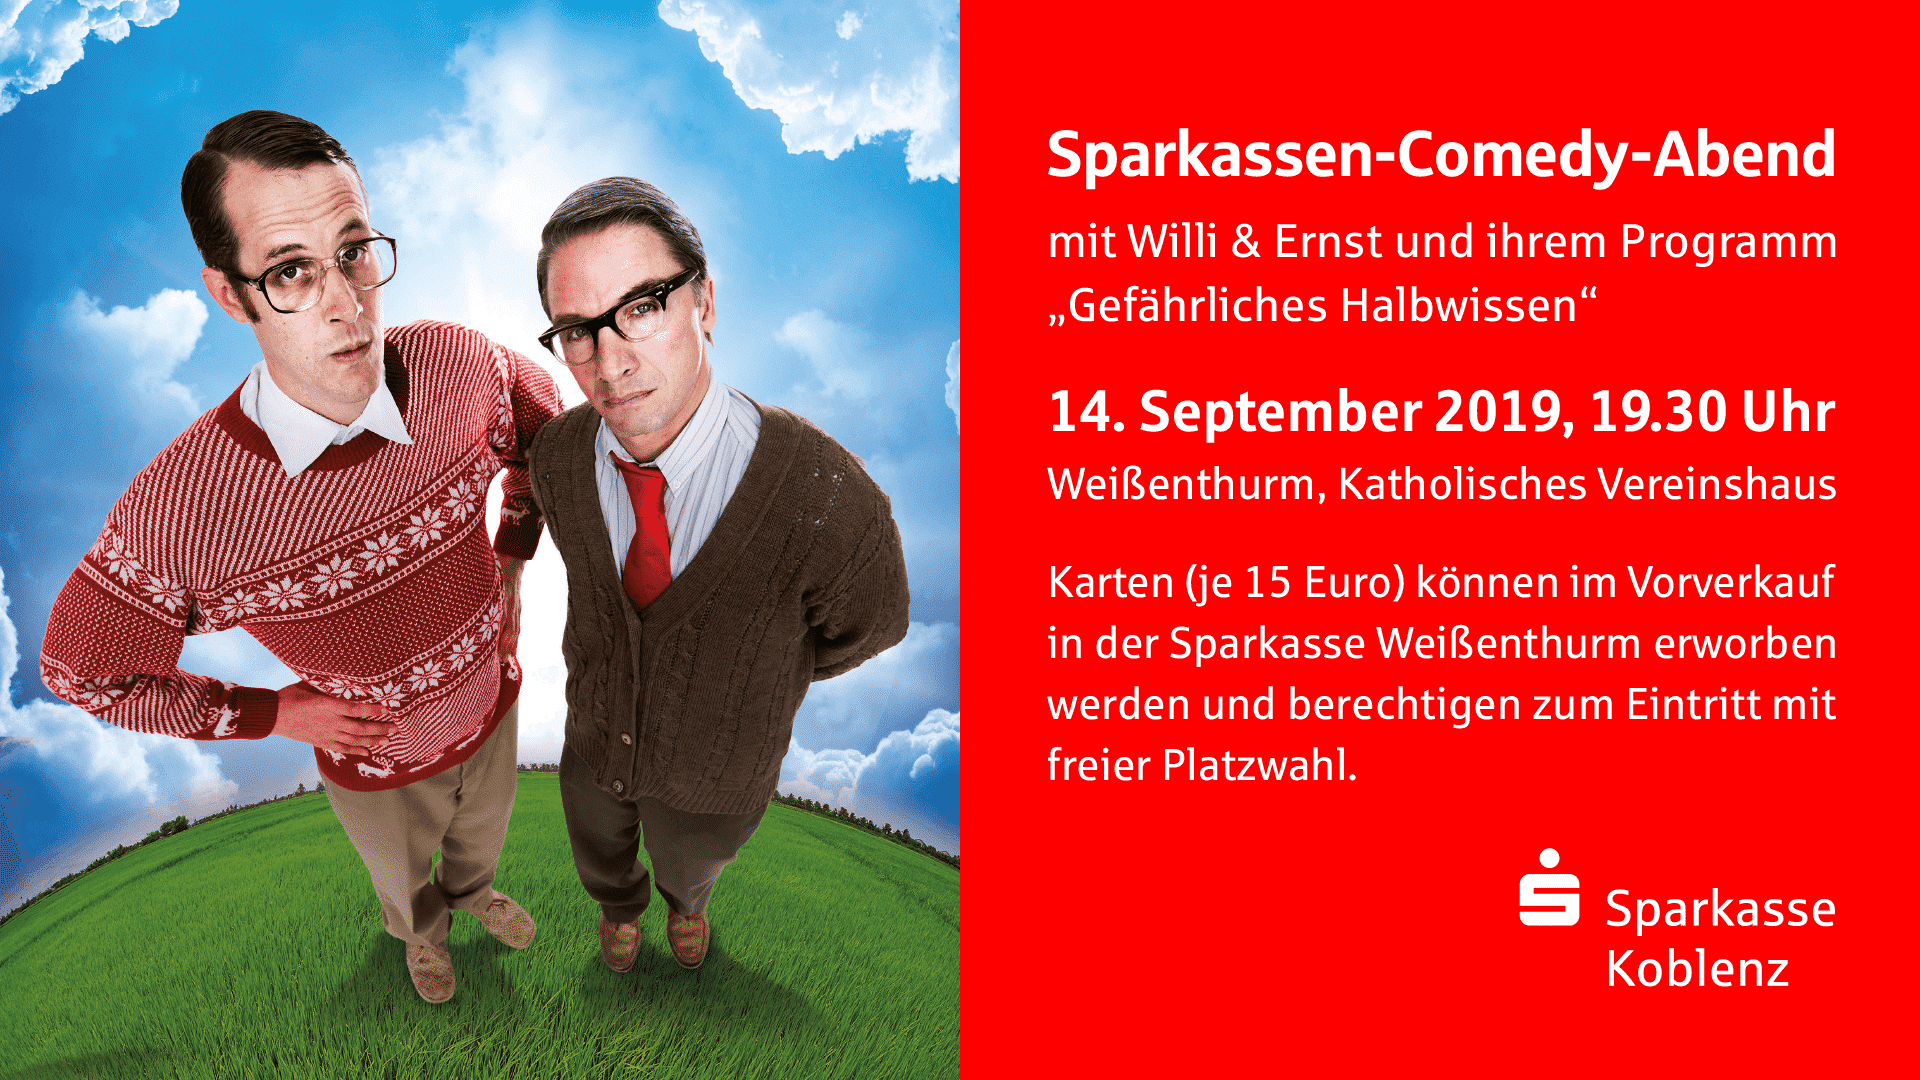 Sparkassen-Comedy-Abend 14.9.2019